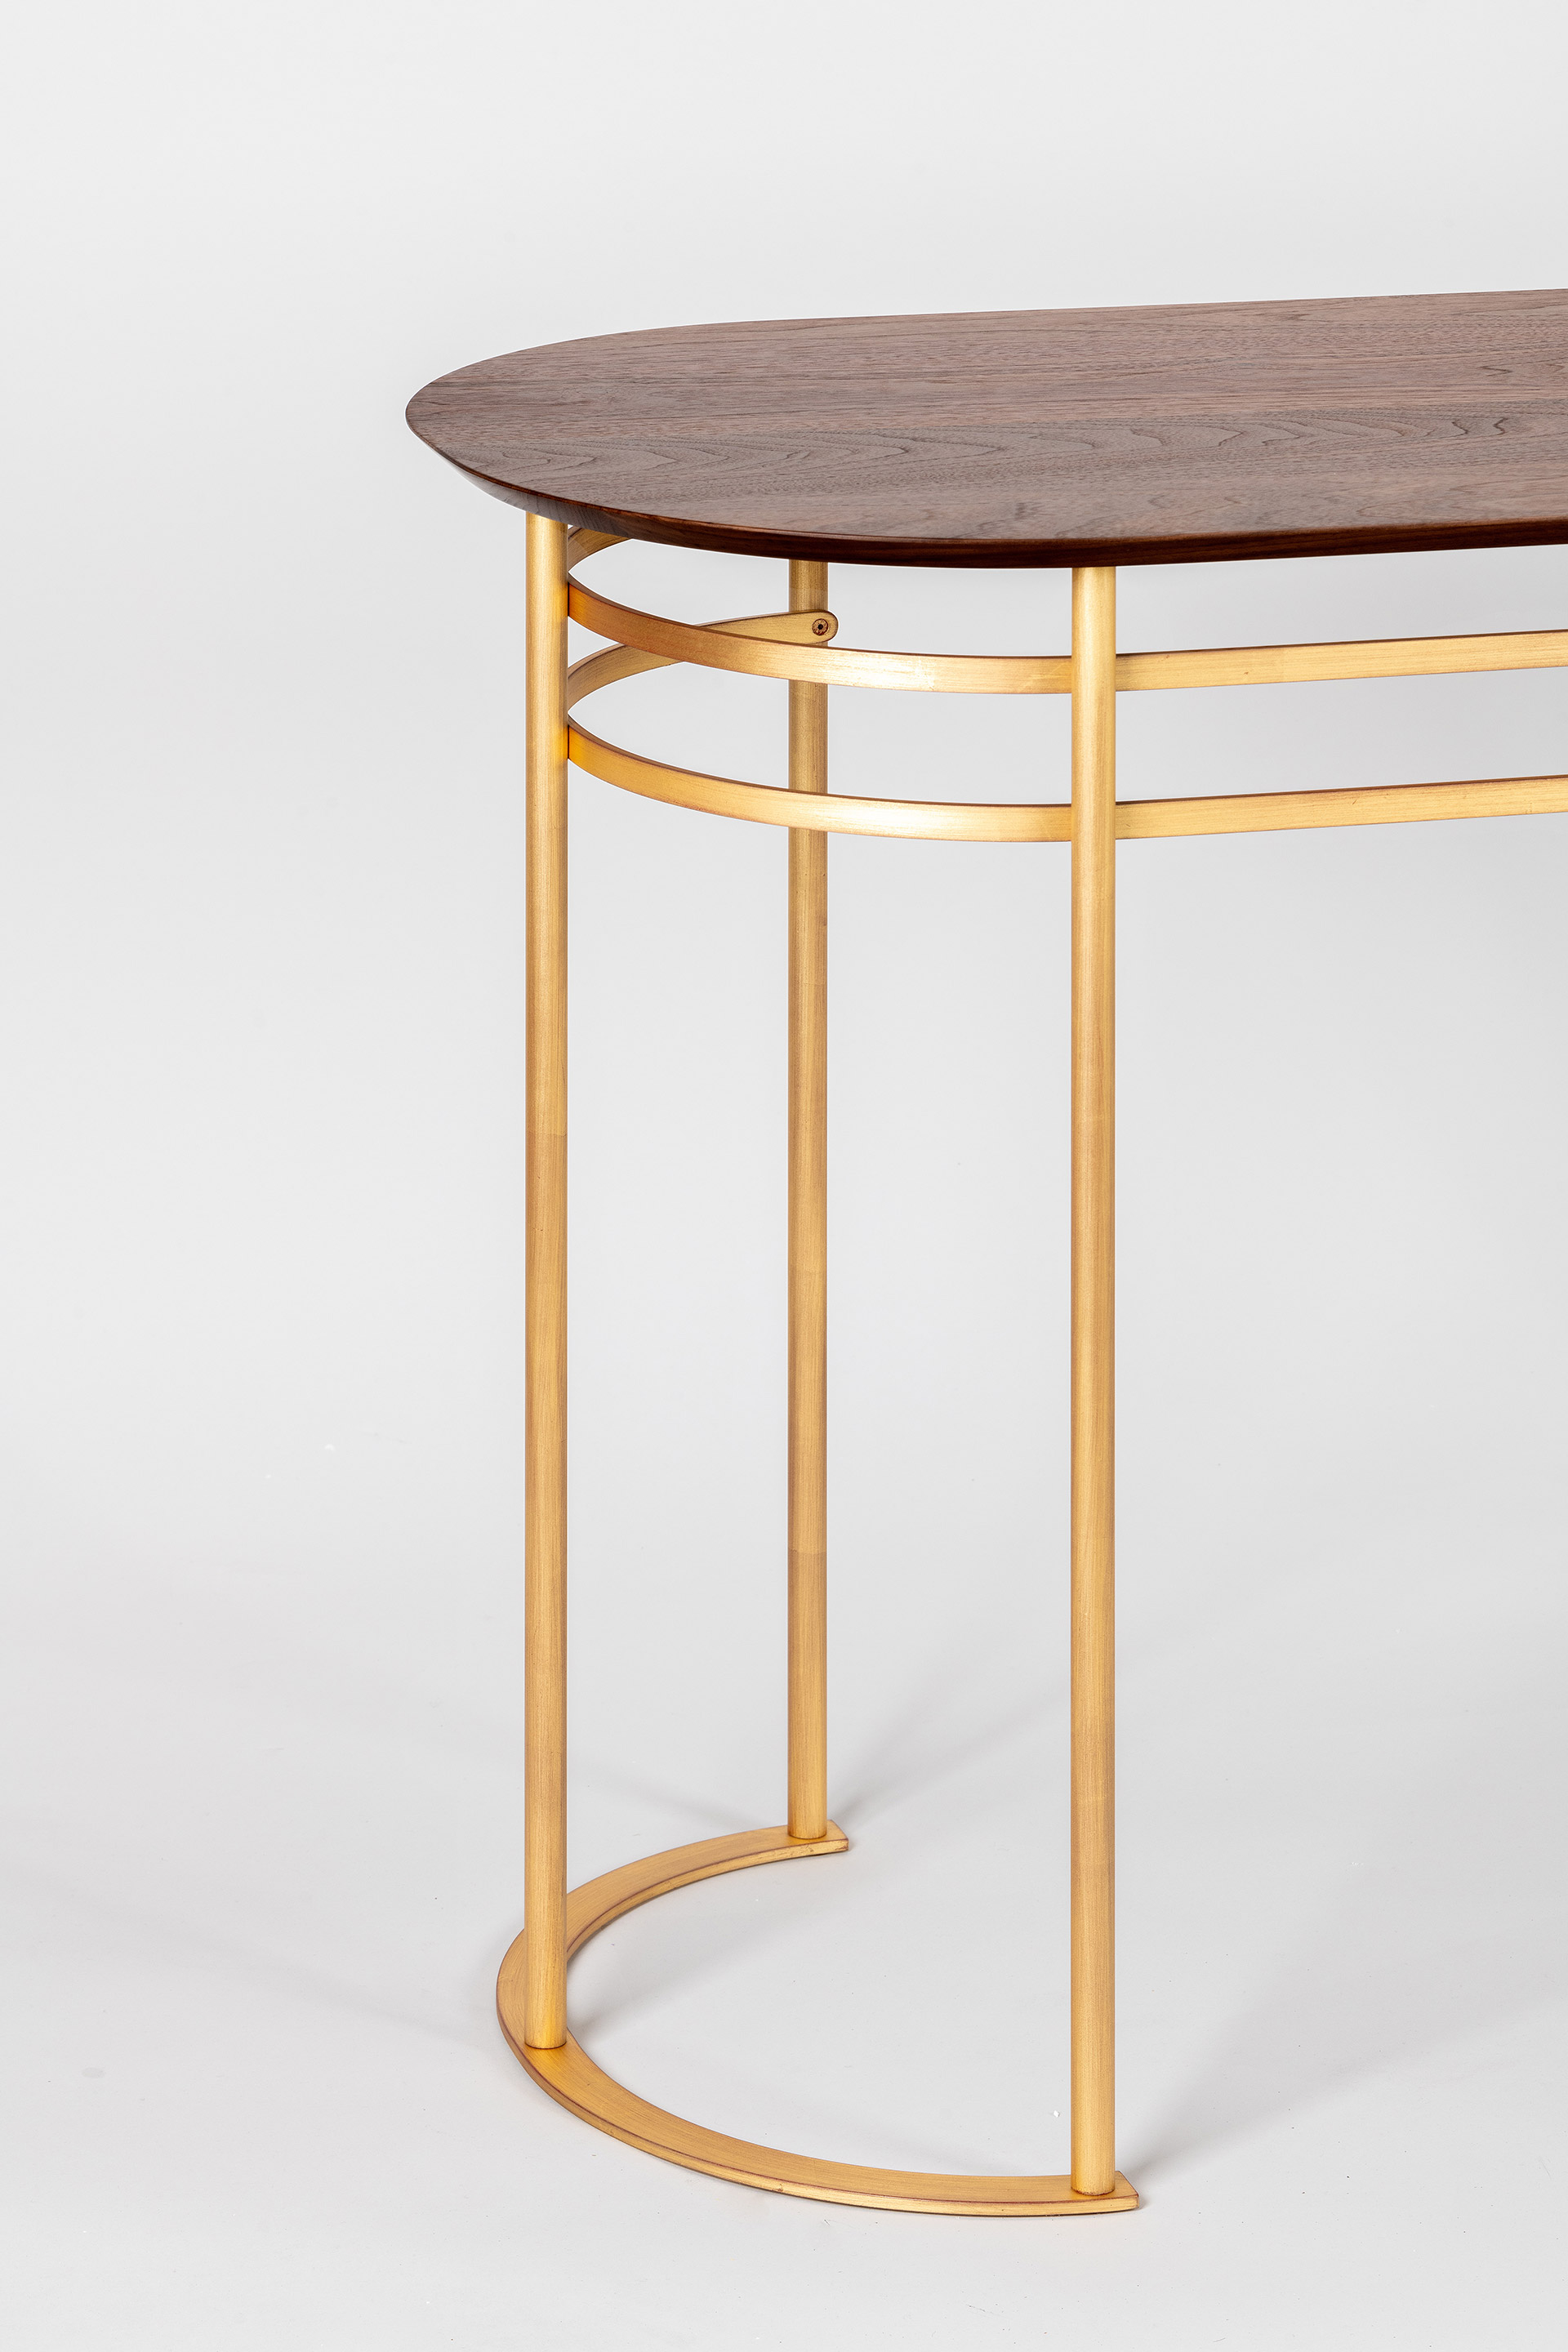 OCTANT Desk-console table by Borella Art Design